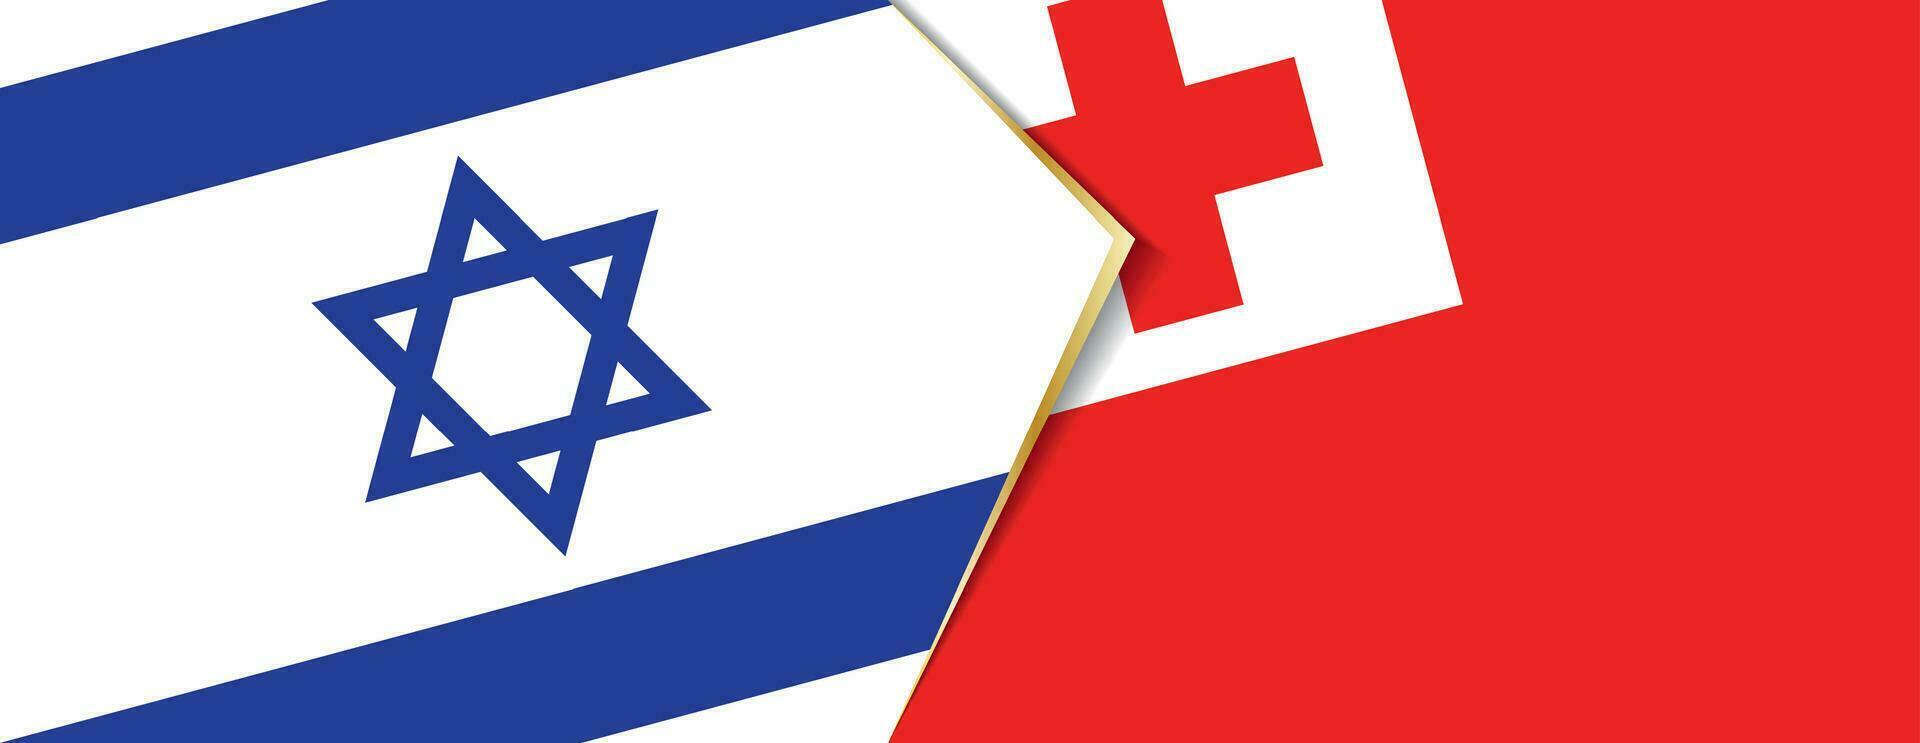 Israel e tonga bandeiras, dois vetor bandeiras.